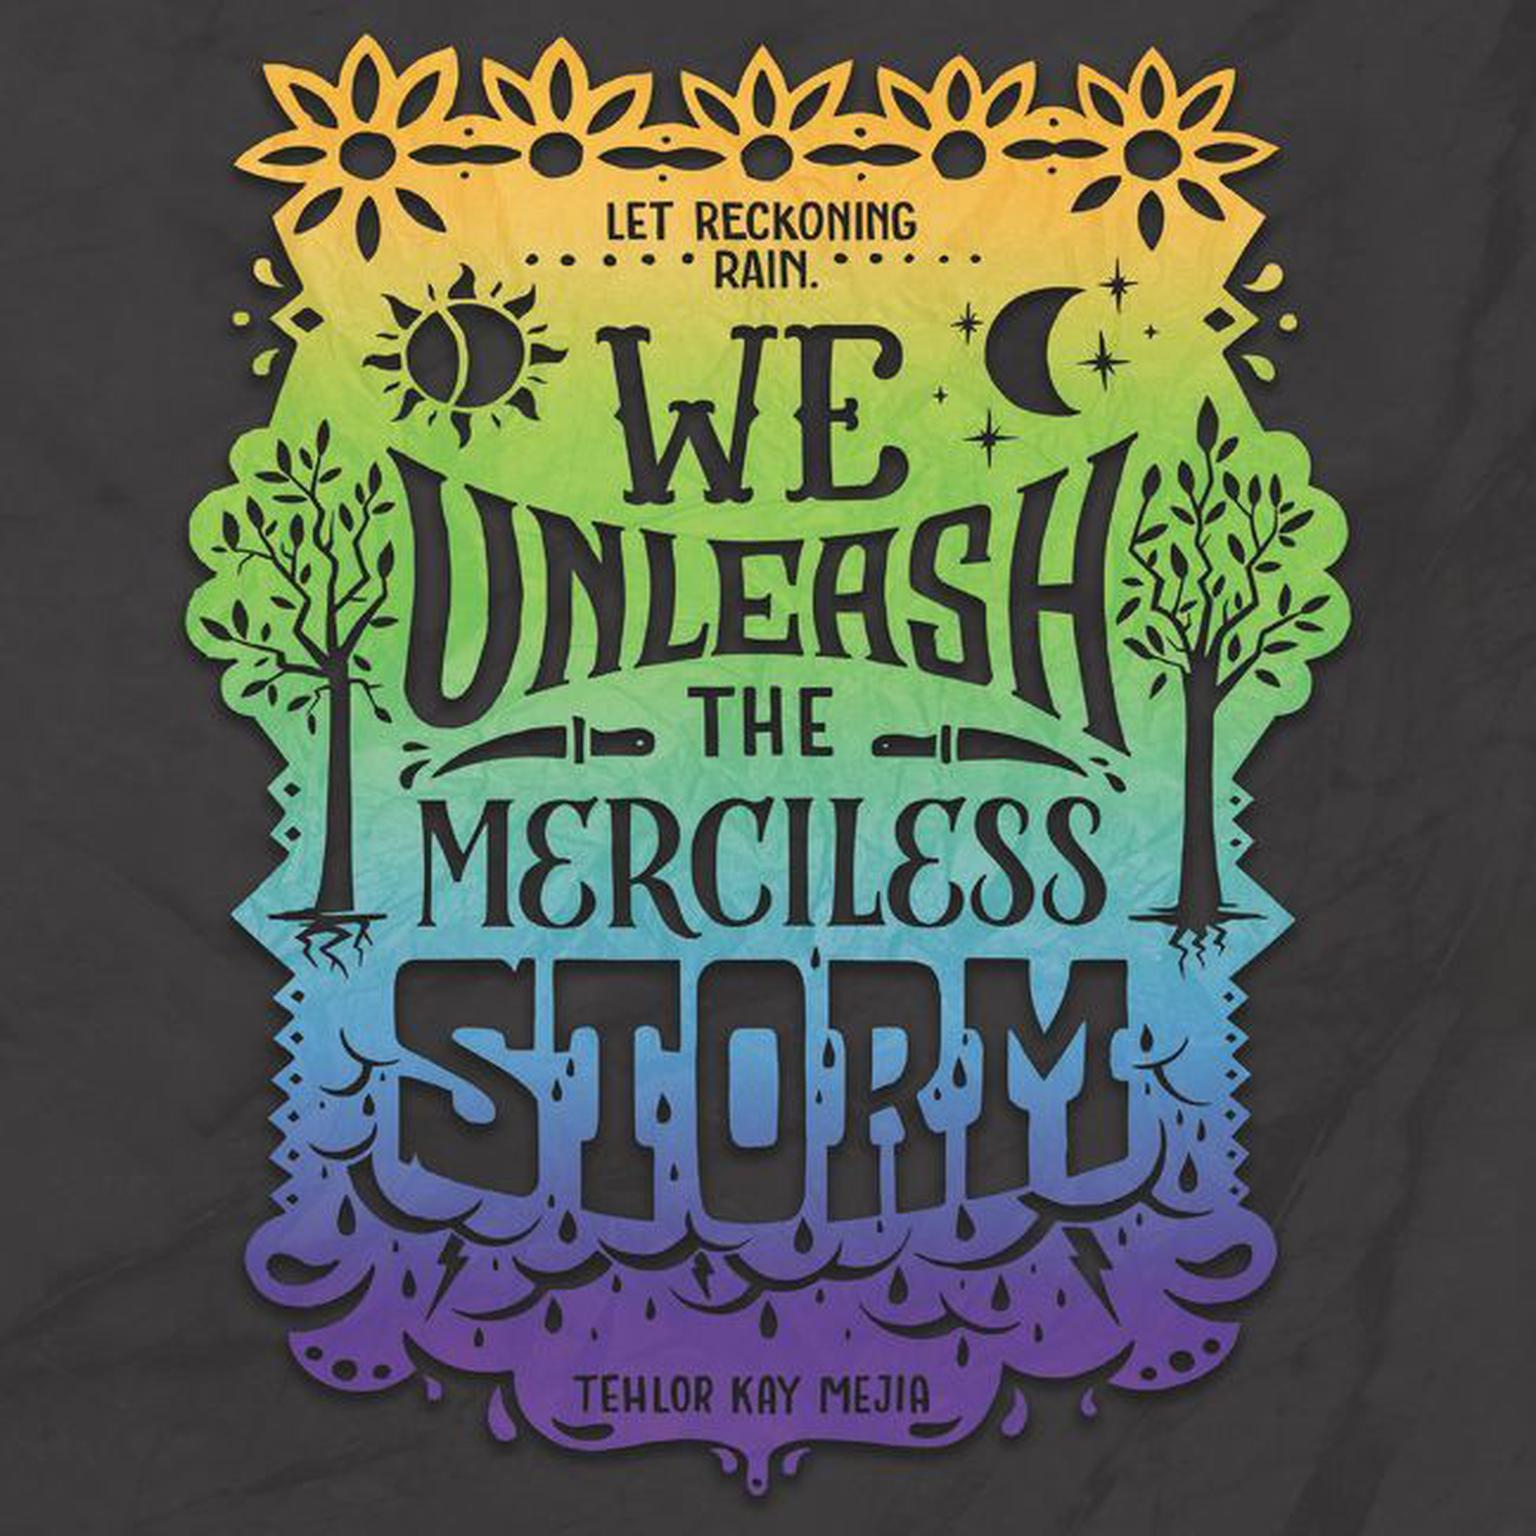 We Unleash the Merciless Storm Audiobook, by Tehlor Kay Mejia